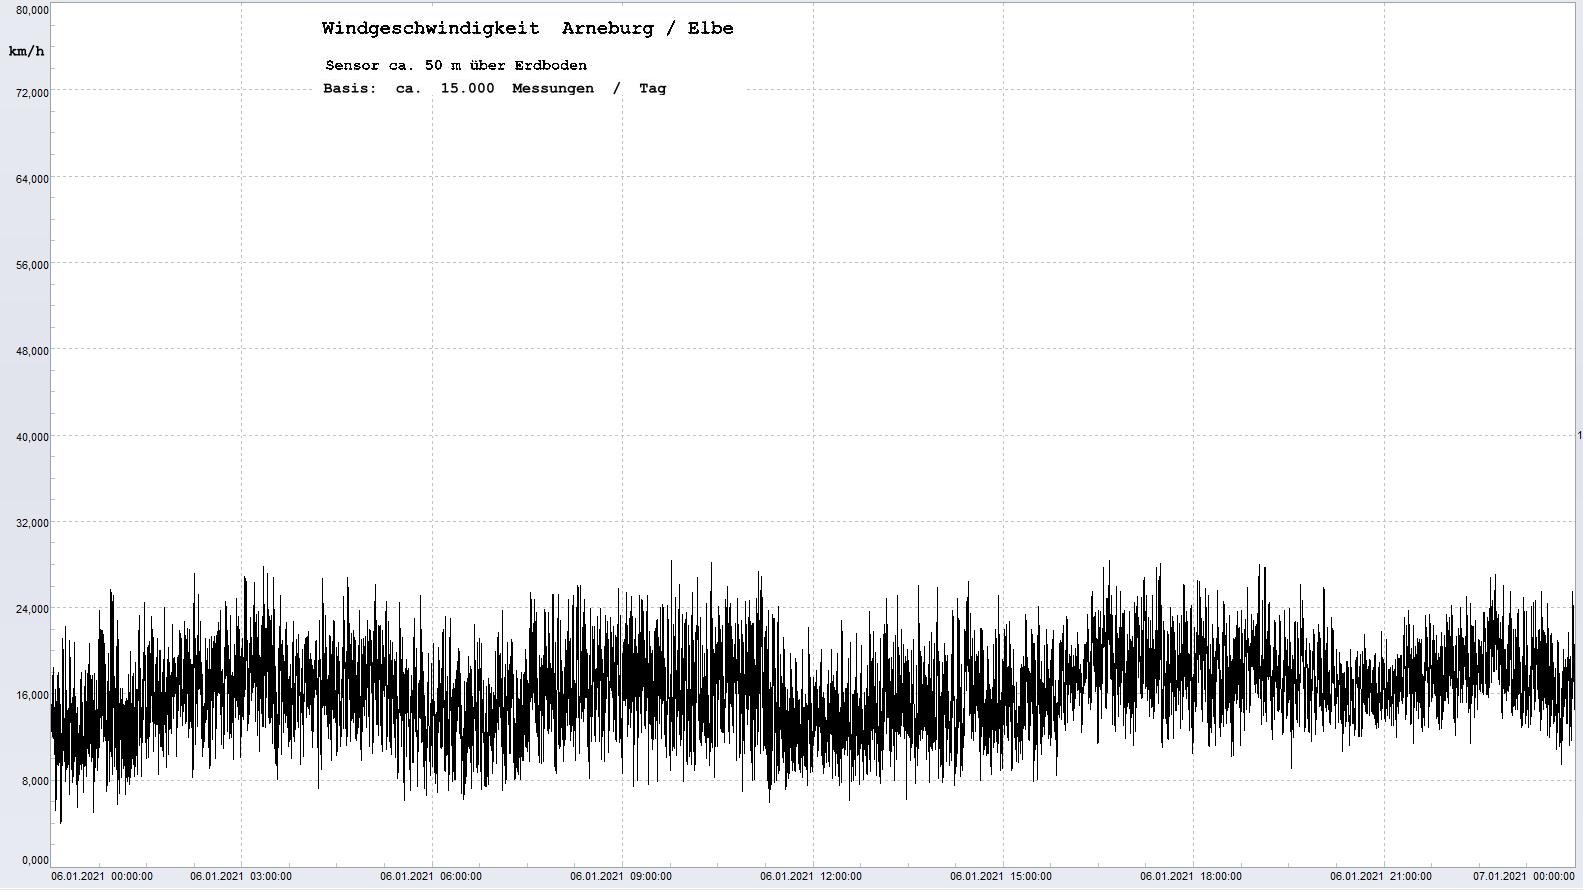 Arneburg Tages-Diagramm Winddaten, 06.01.2021
  Diagramm, Sensor auf Gebude, ca. 50 m ber Erdboden, Basis: 5s-Aufzeichnung